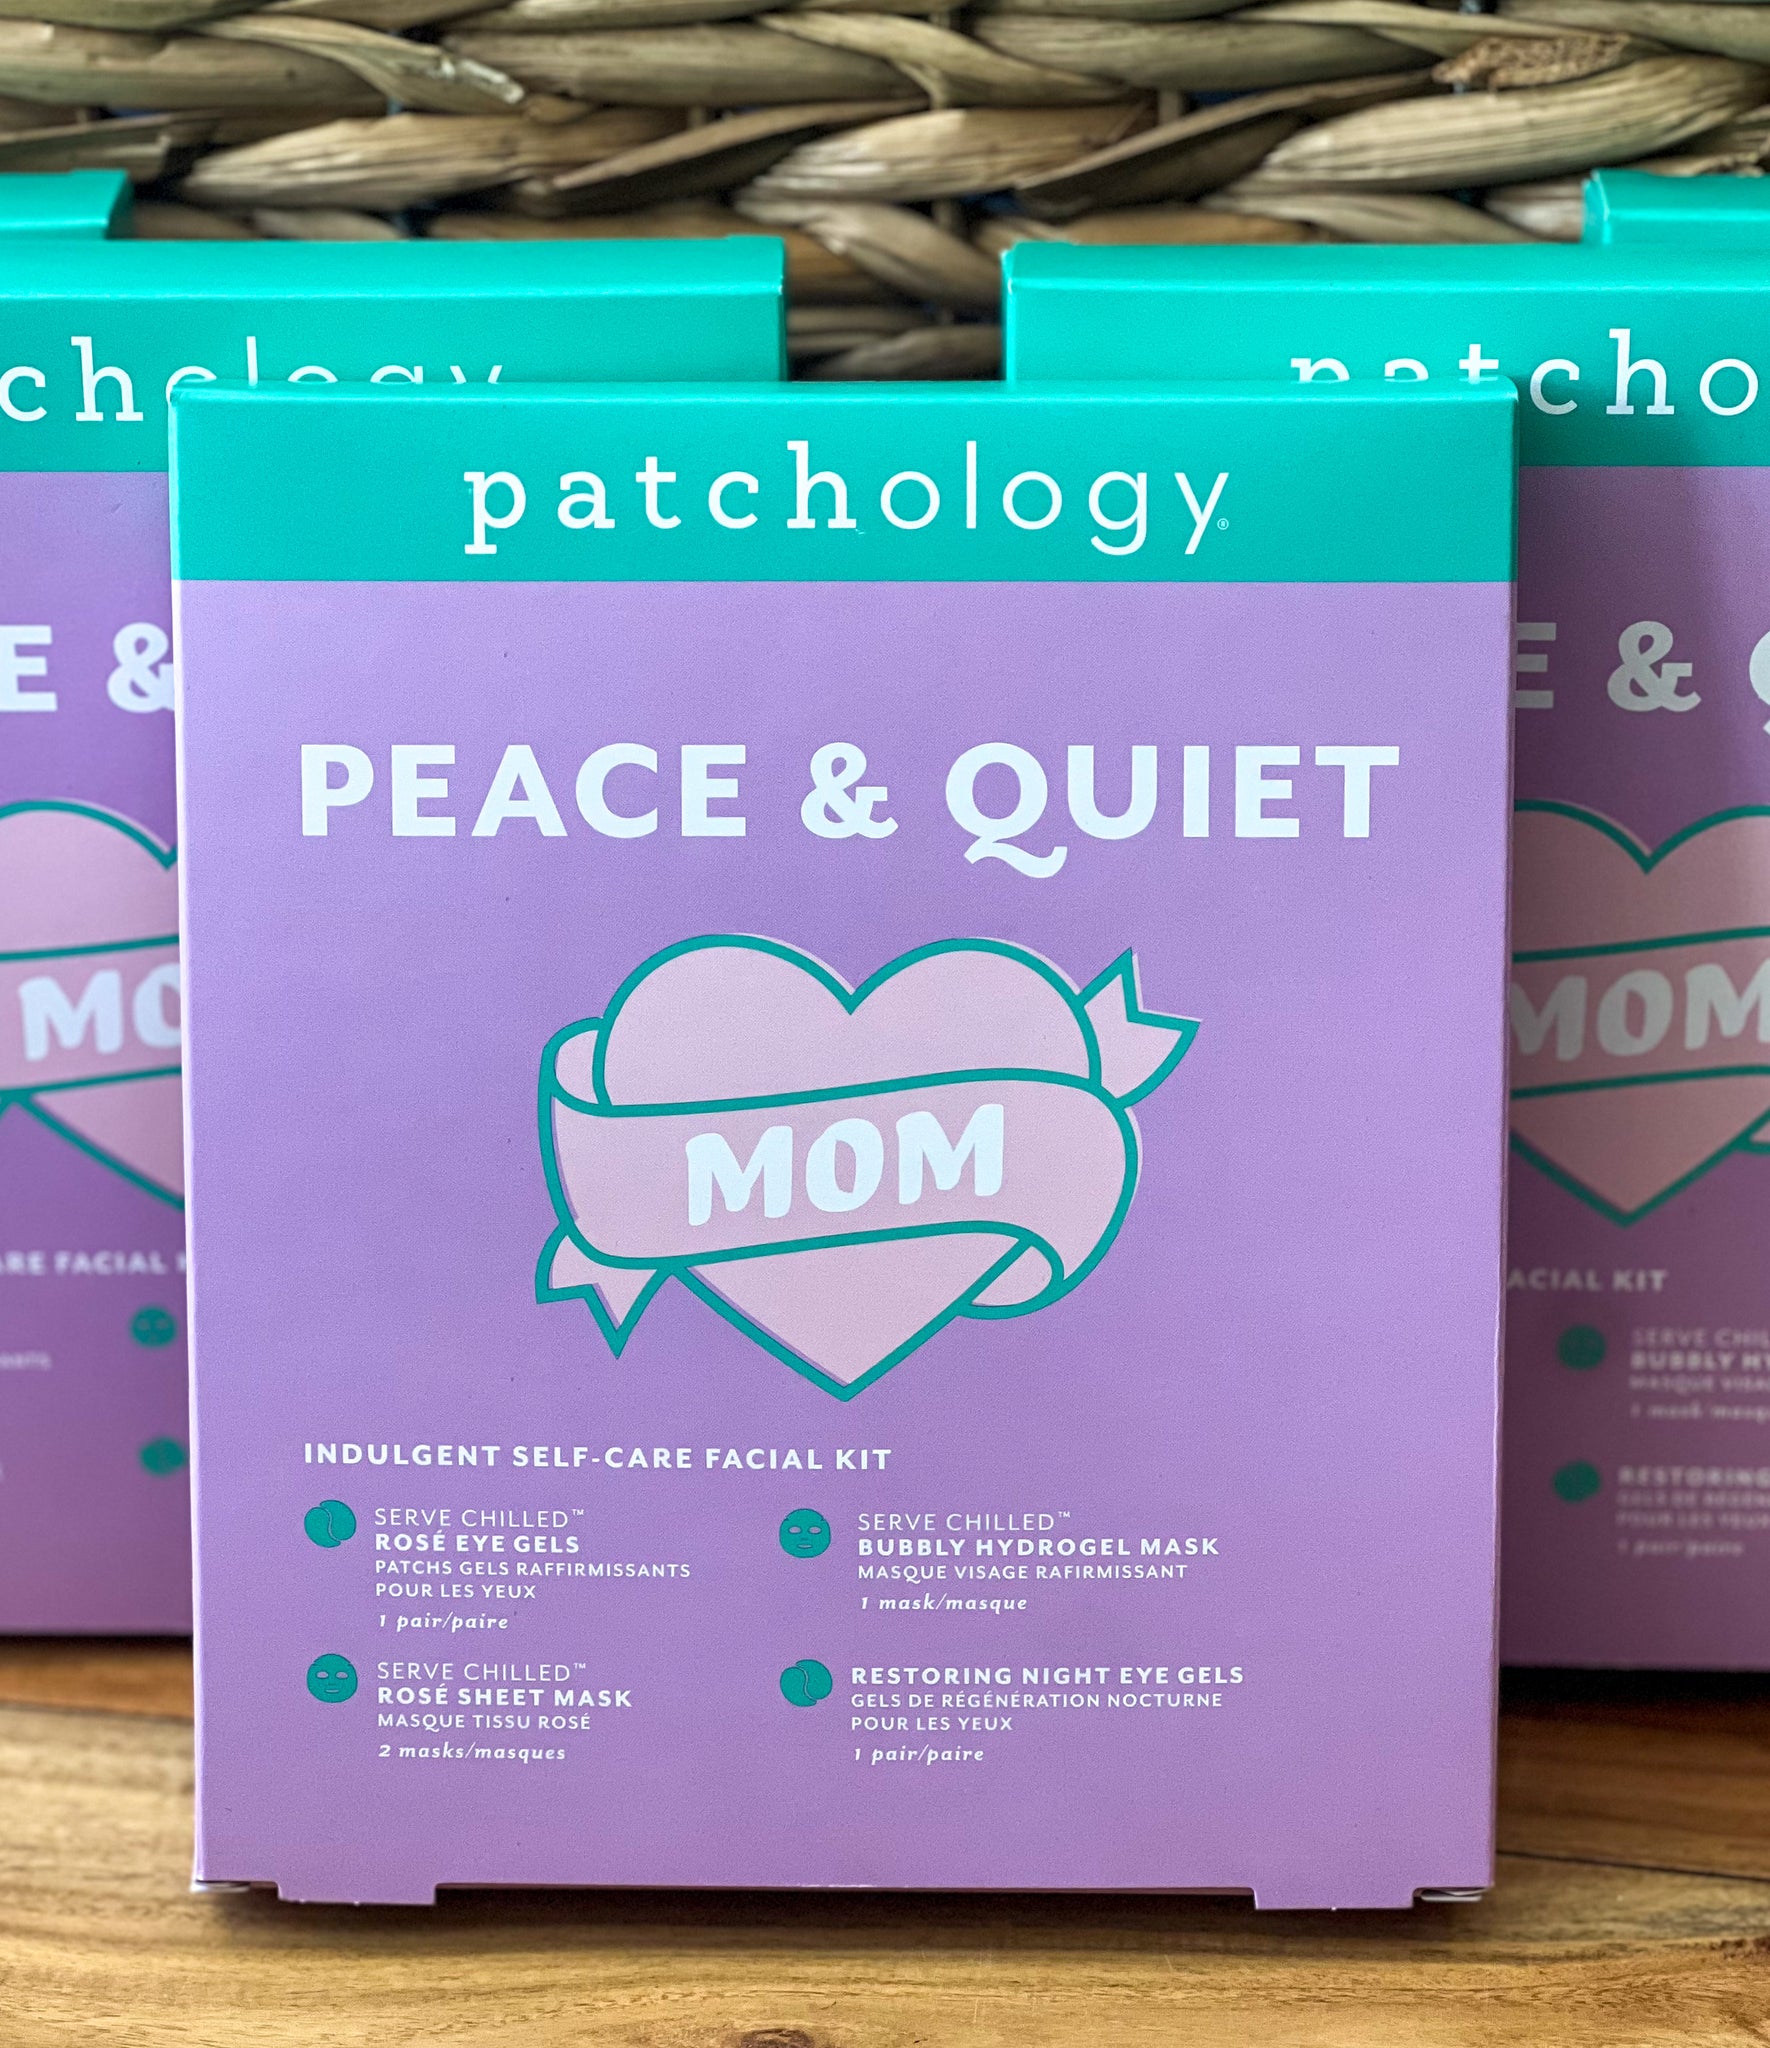 Patchology Peace & Quiet